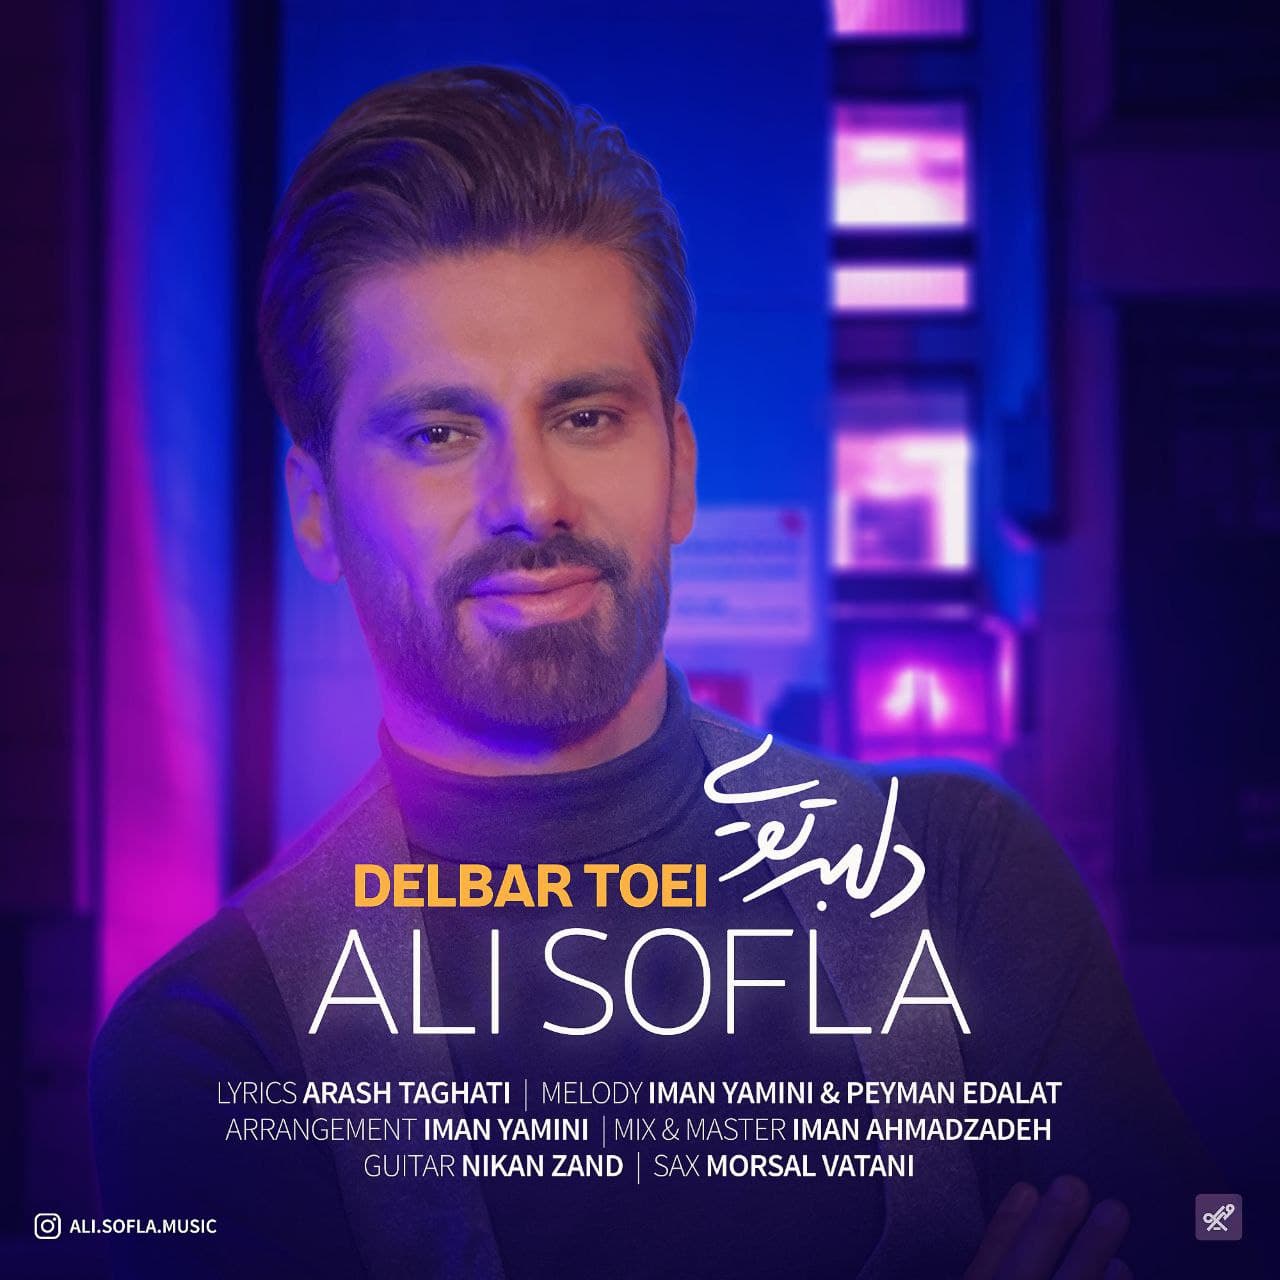  دانلود آهنگ جدید علی سفلا - دلبر تویی | Download New Music By Ali Sofla - Delbar Toei